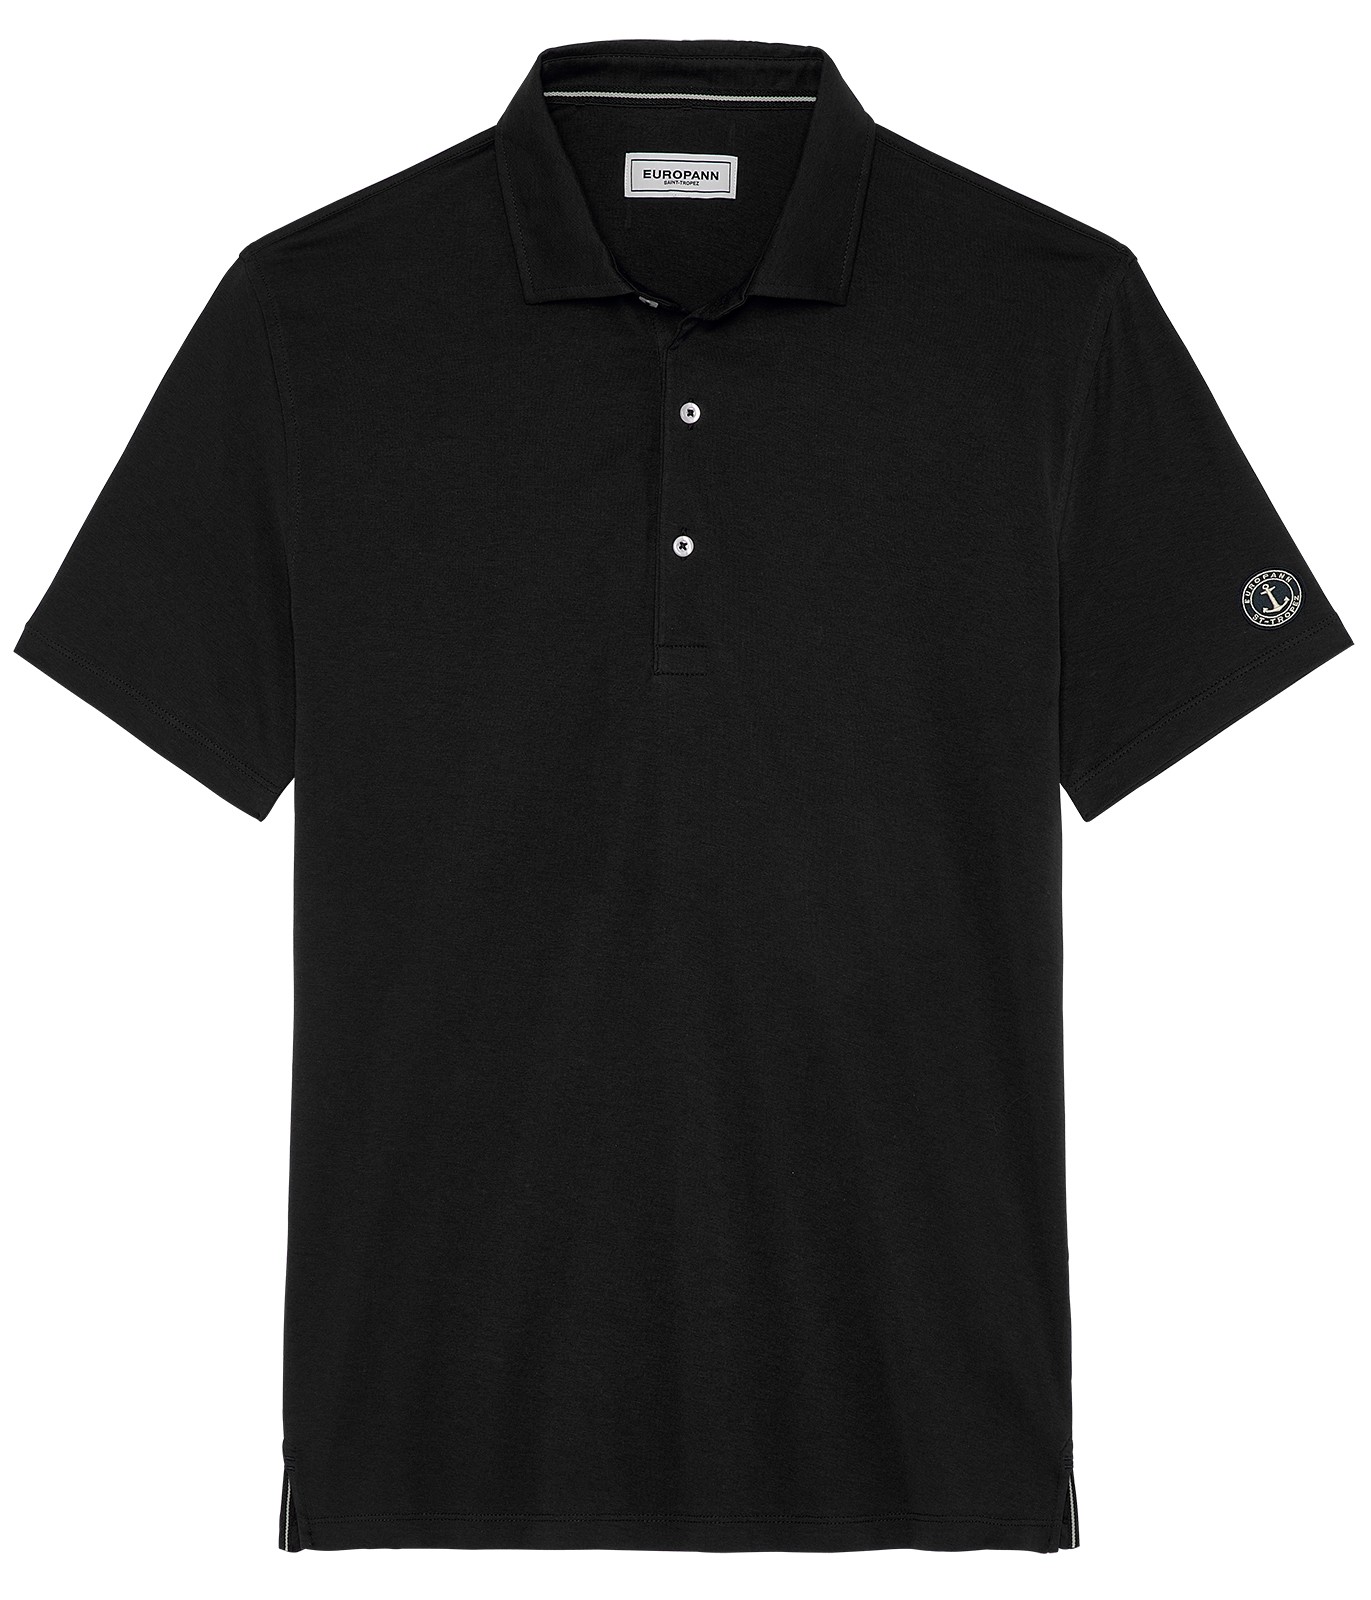 polo brand short Quality Black color sleeves | Europann for men